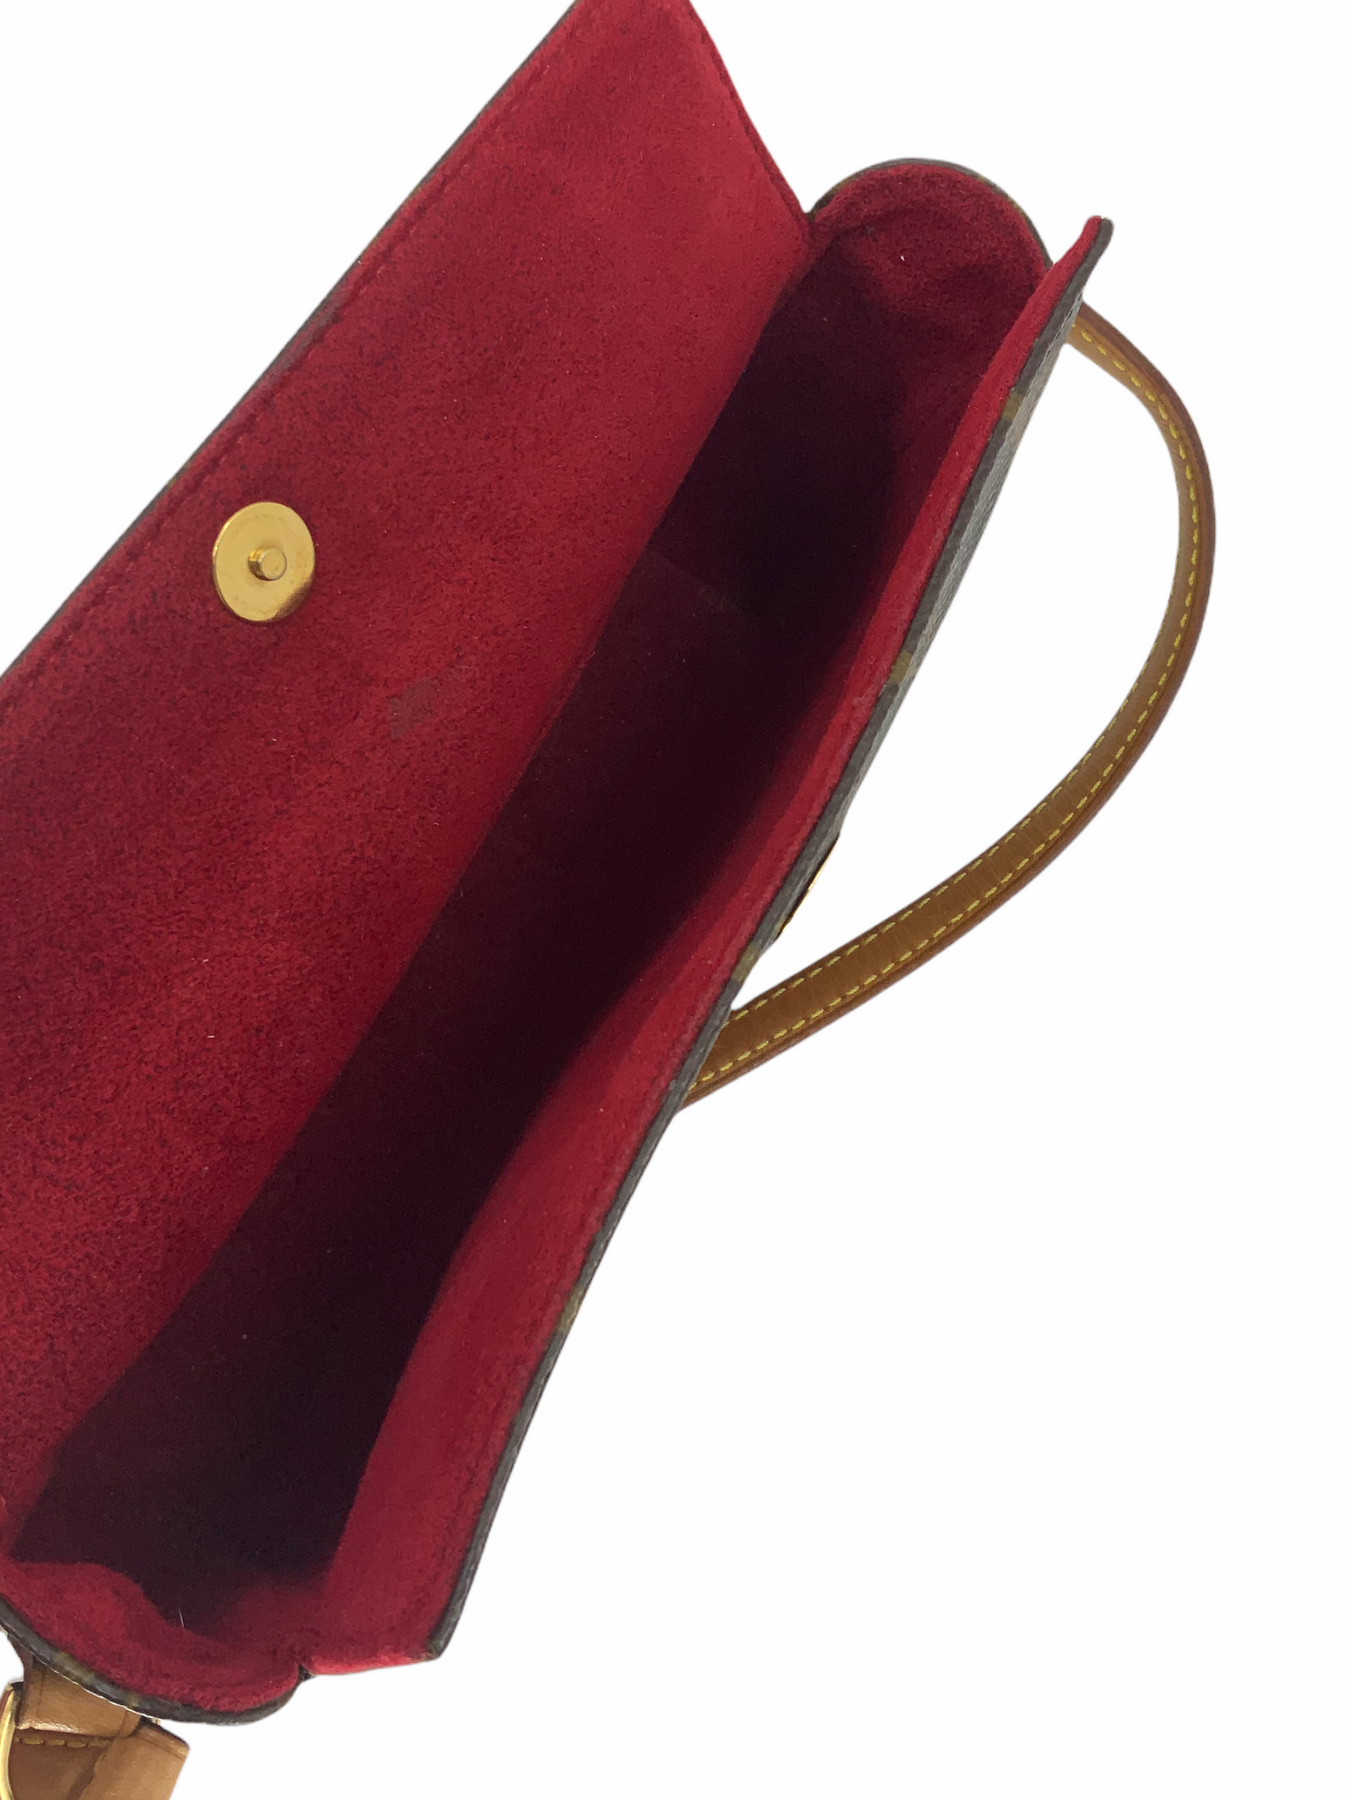 Authenticated used Louis Vuitton Monogram Recital M51900 Handbag Bag 0081 Louis Vuitton, Adult Unisex, Size: (HxWxD): 13cm x 20cm x 6.5cm / 5.11'' x